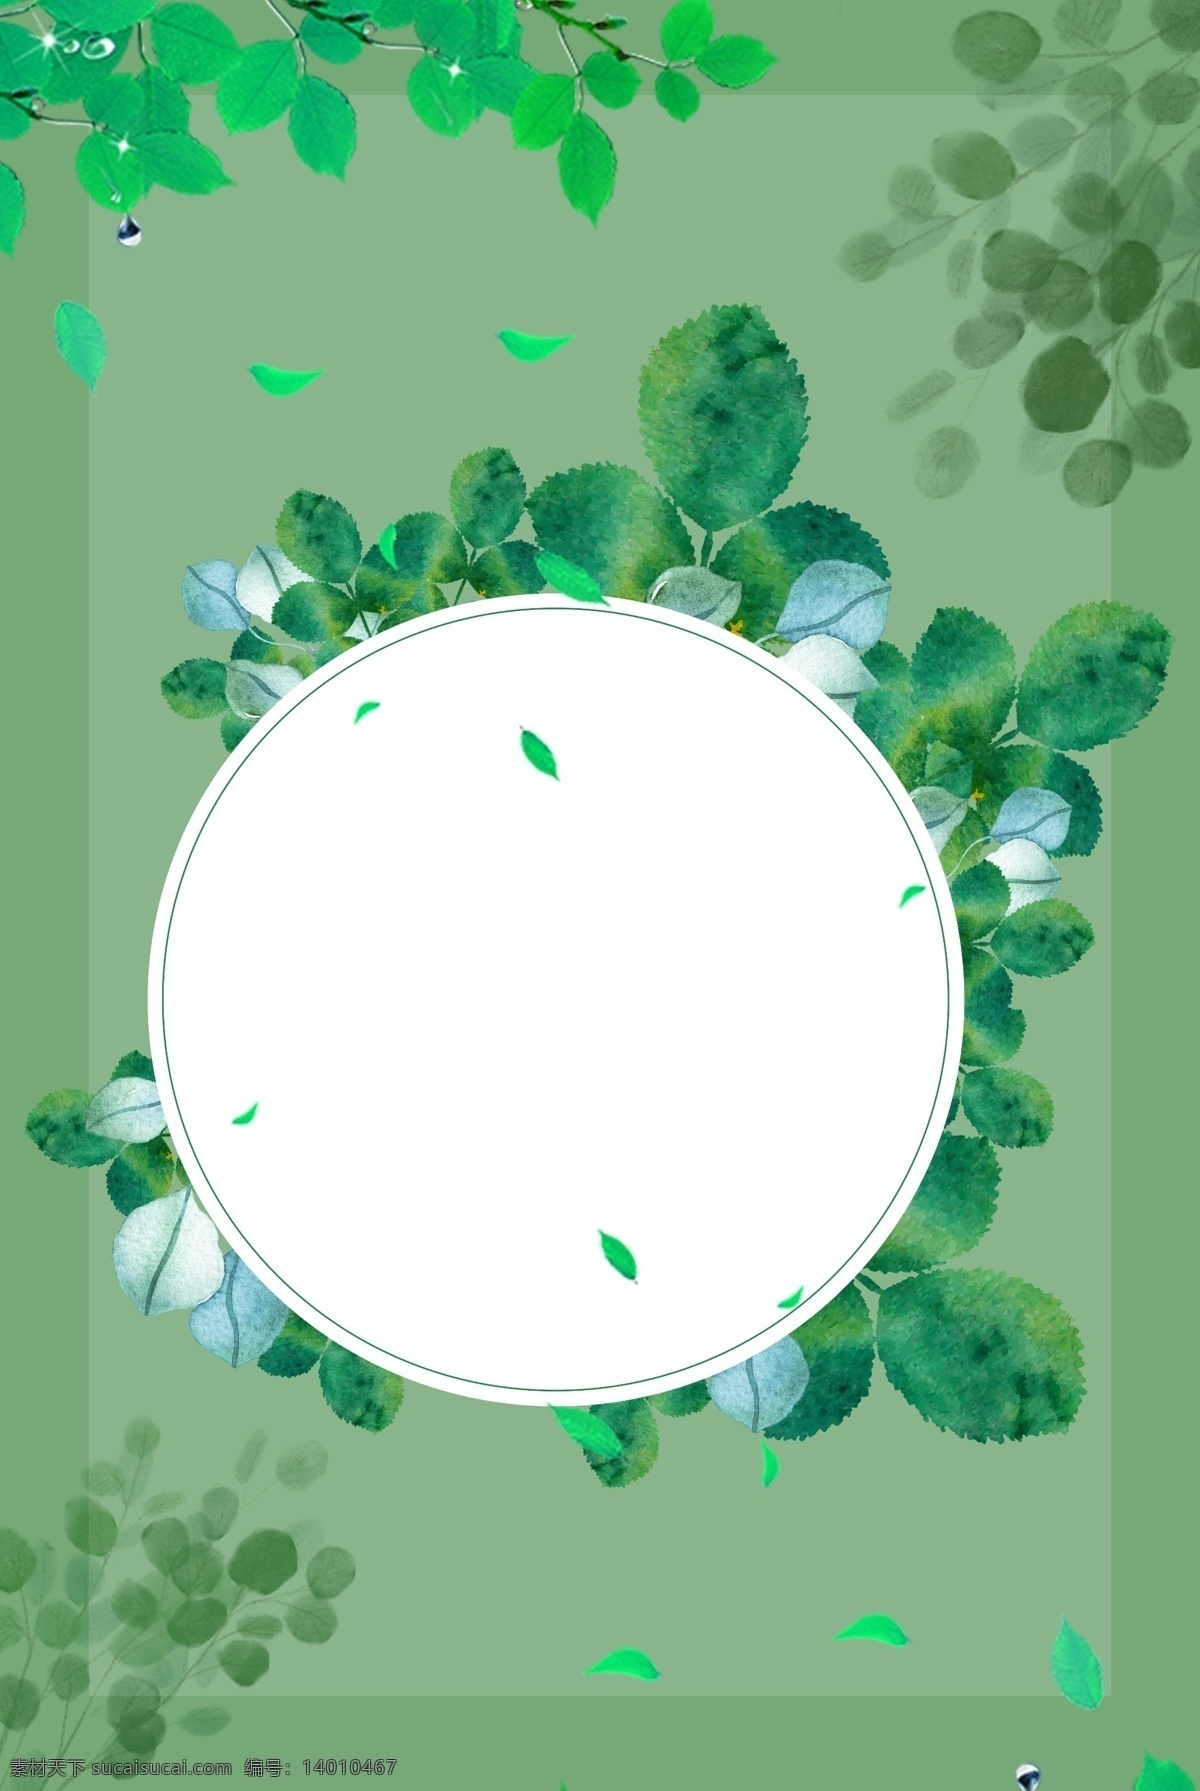 绿色植物 圆环 装饰 背景 绿色 植物 自然 叶子 树叶 环境 环绕 边框 女生节 女神节 节日